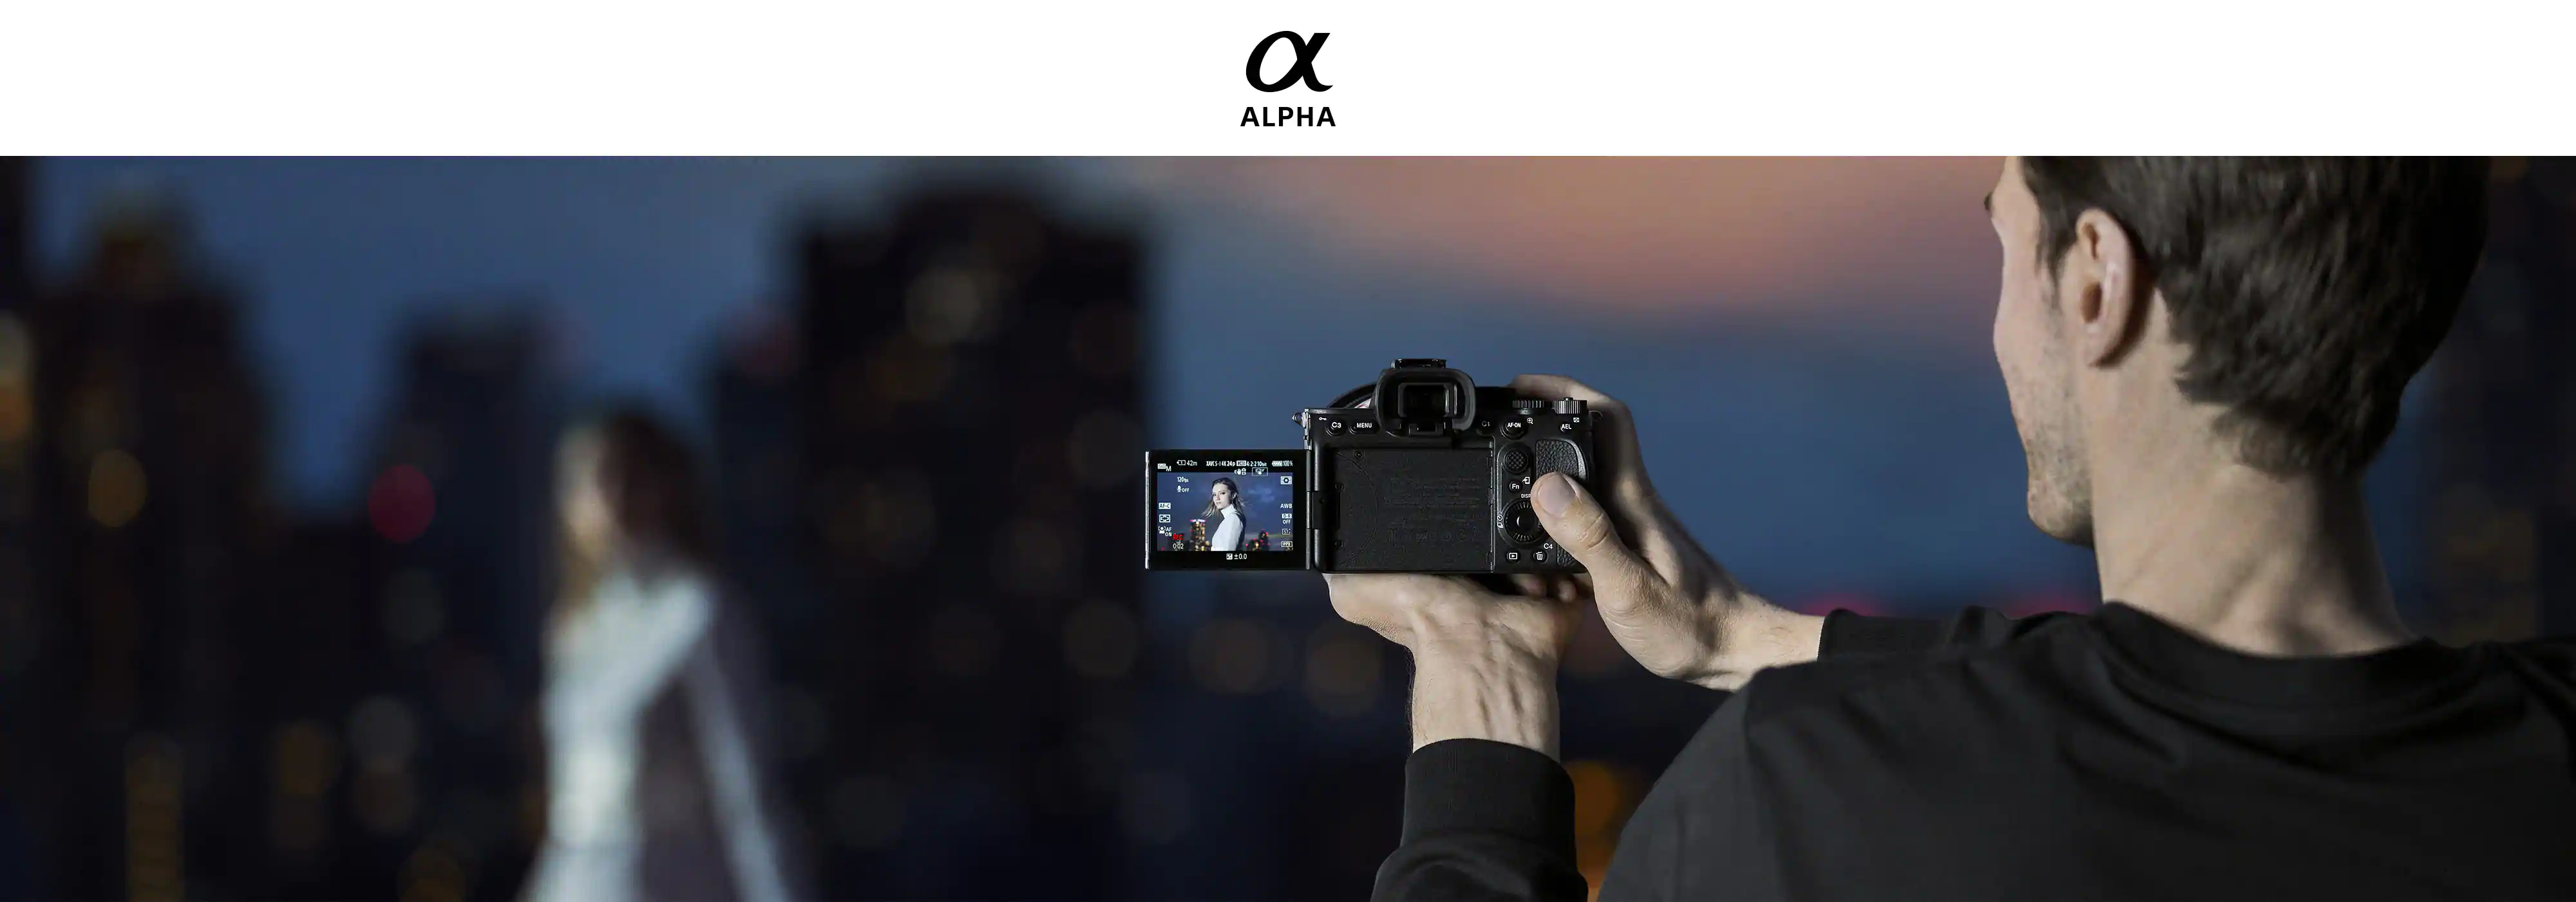 دوربین حرفه ای سونی مدل آفا 7S